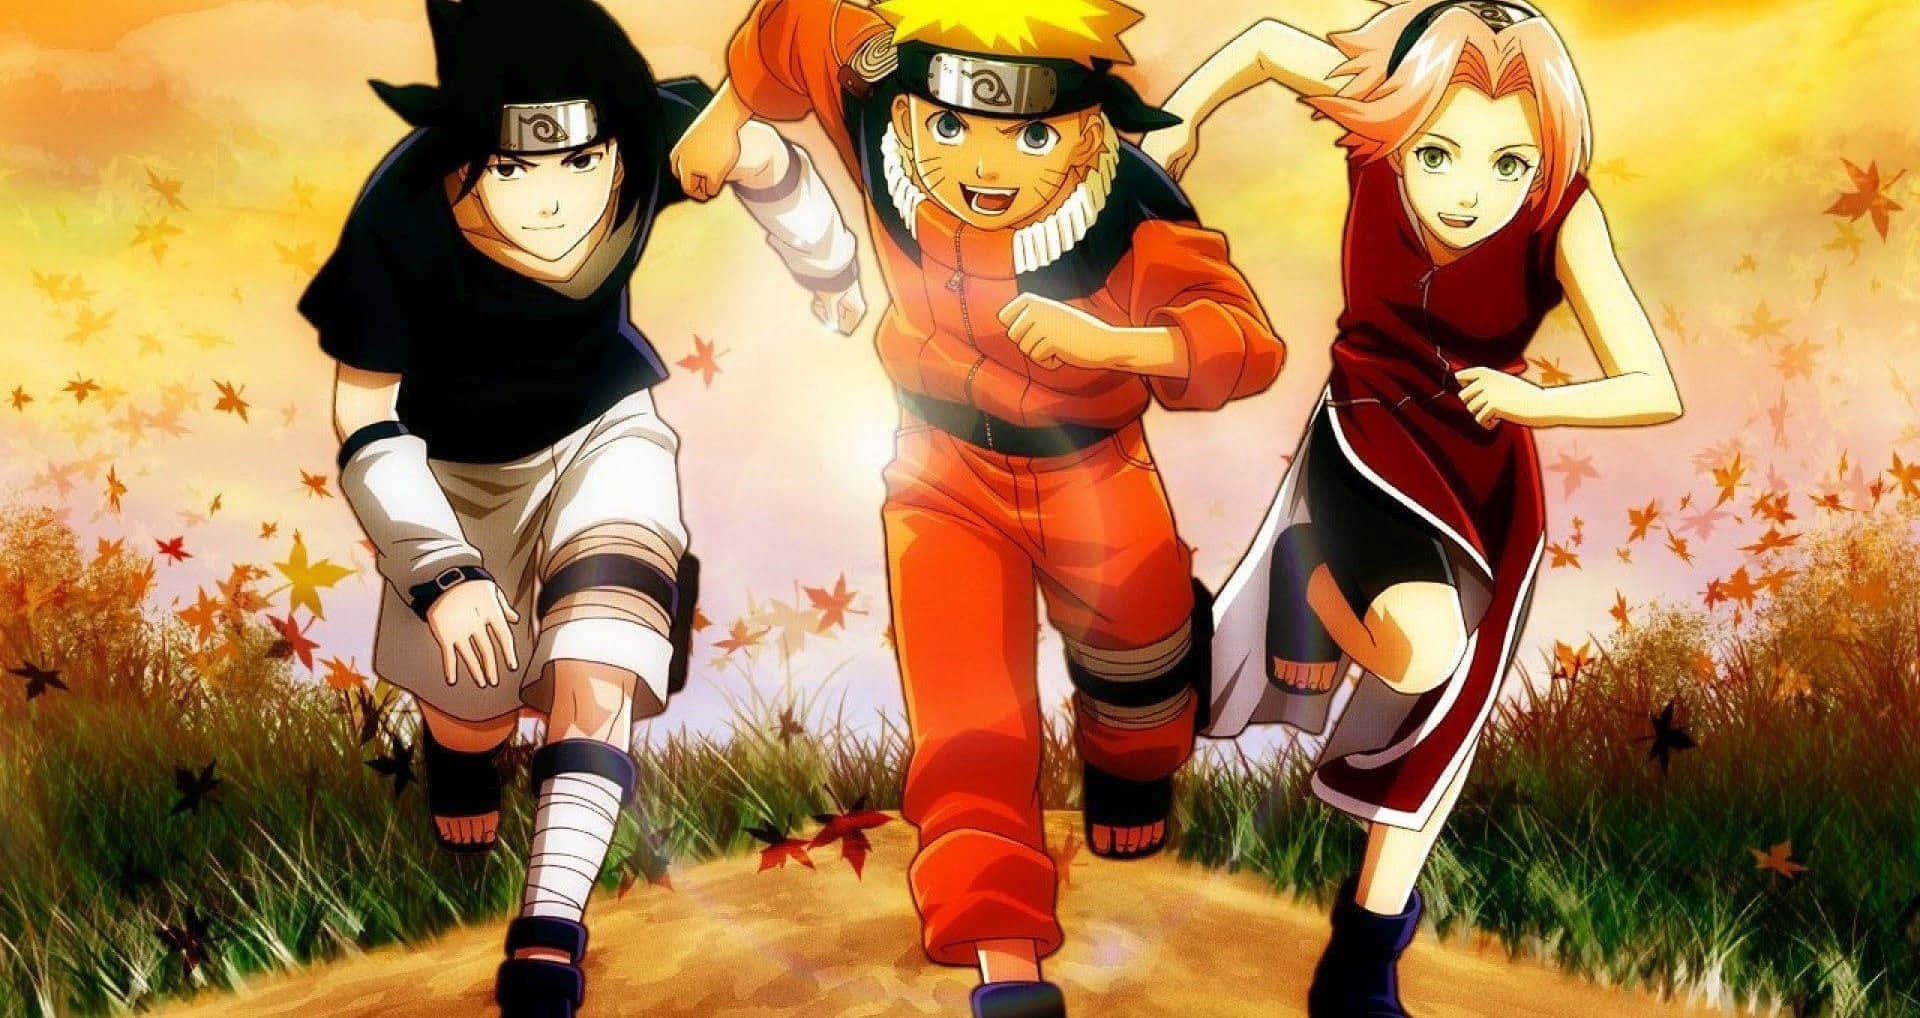 Narutobakgrunder - Naruto Bakgrunder Wallpaper